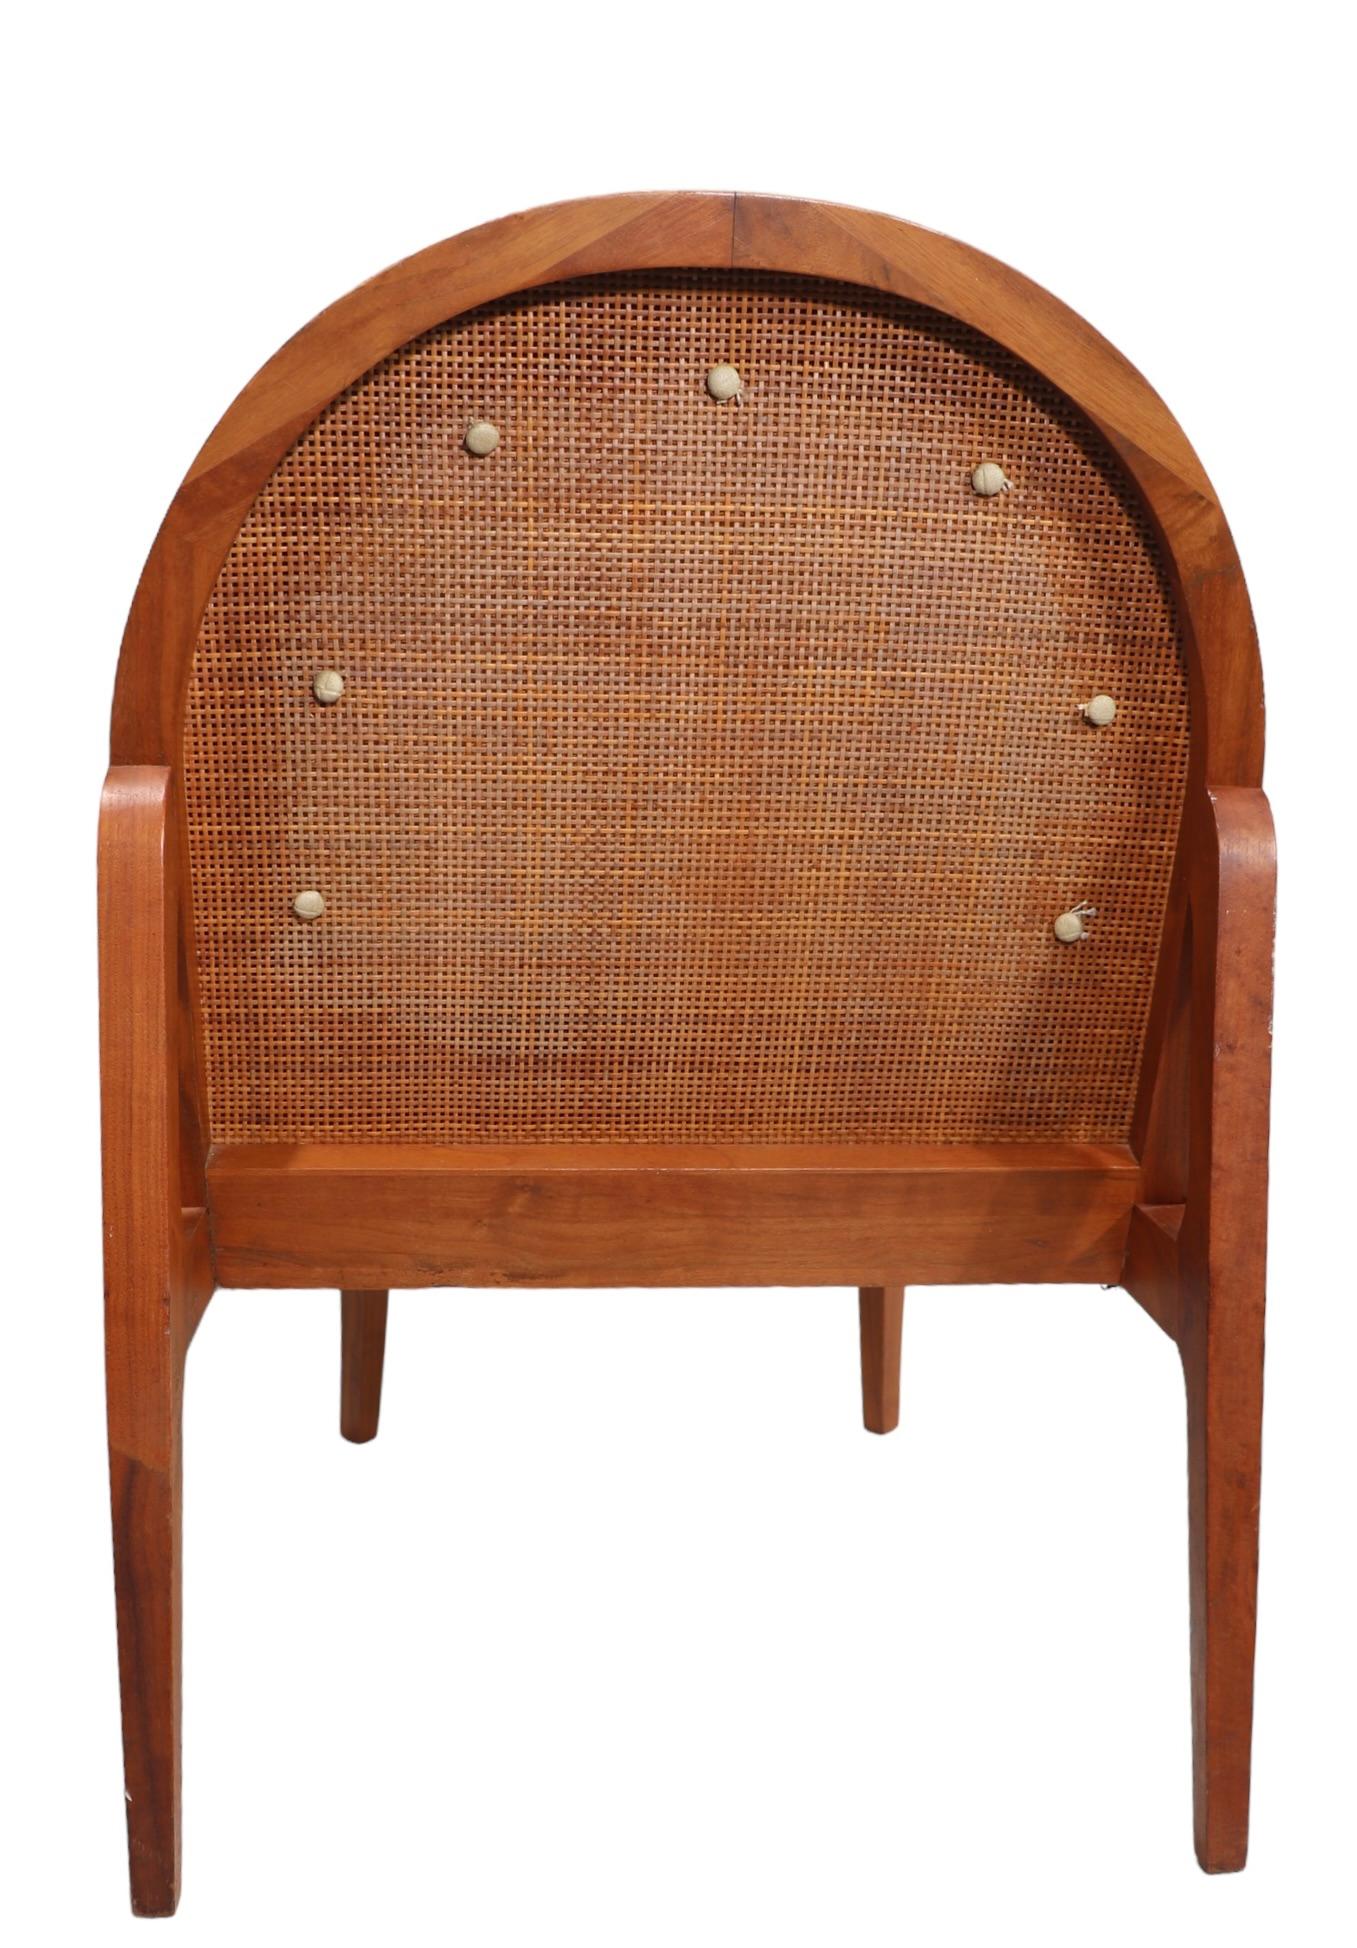 Außergewöhnlich anspruchsvoller Mid Century Lounge Chair in sehr gutem, sauberem, originalem und gebrauchsfertigem Zustand. Der Stuhl verfügt über eine gepolsterte Rückenlehne, die  Das gepolsterte Vinylkissen wird von einem Rahmen aus Nussbaumholz